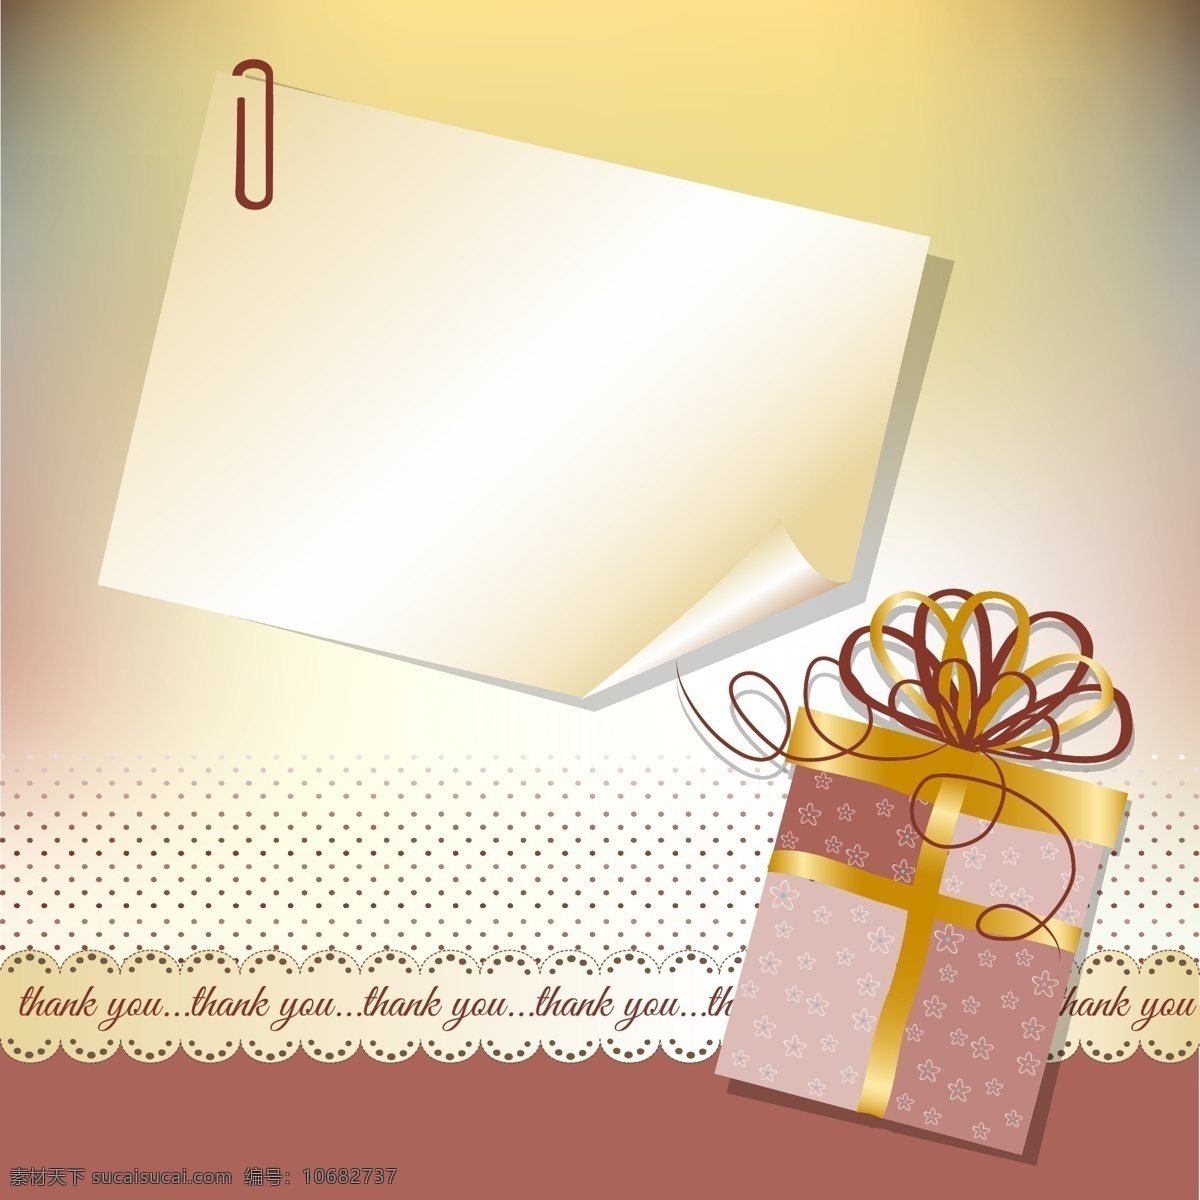 谢谢 圣诞 礼物 背景 圣诞卡 盒 礼品 红 礼品盒 圣诞背景 红色的背景 谢谢你 礼品卡 颜色 黄色的 丰富多彩 黄色的背景 主题 圣诞礼物 白色